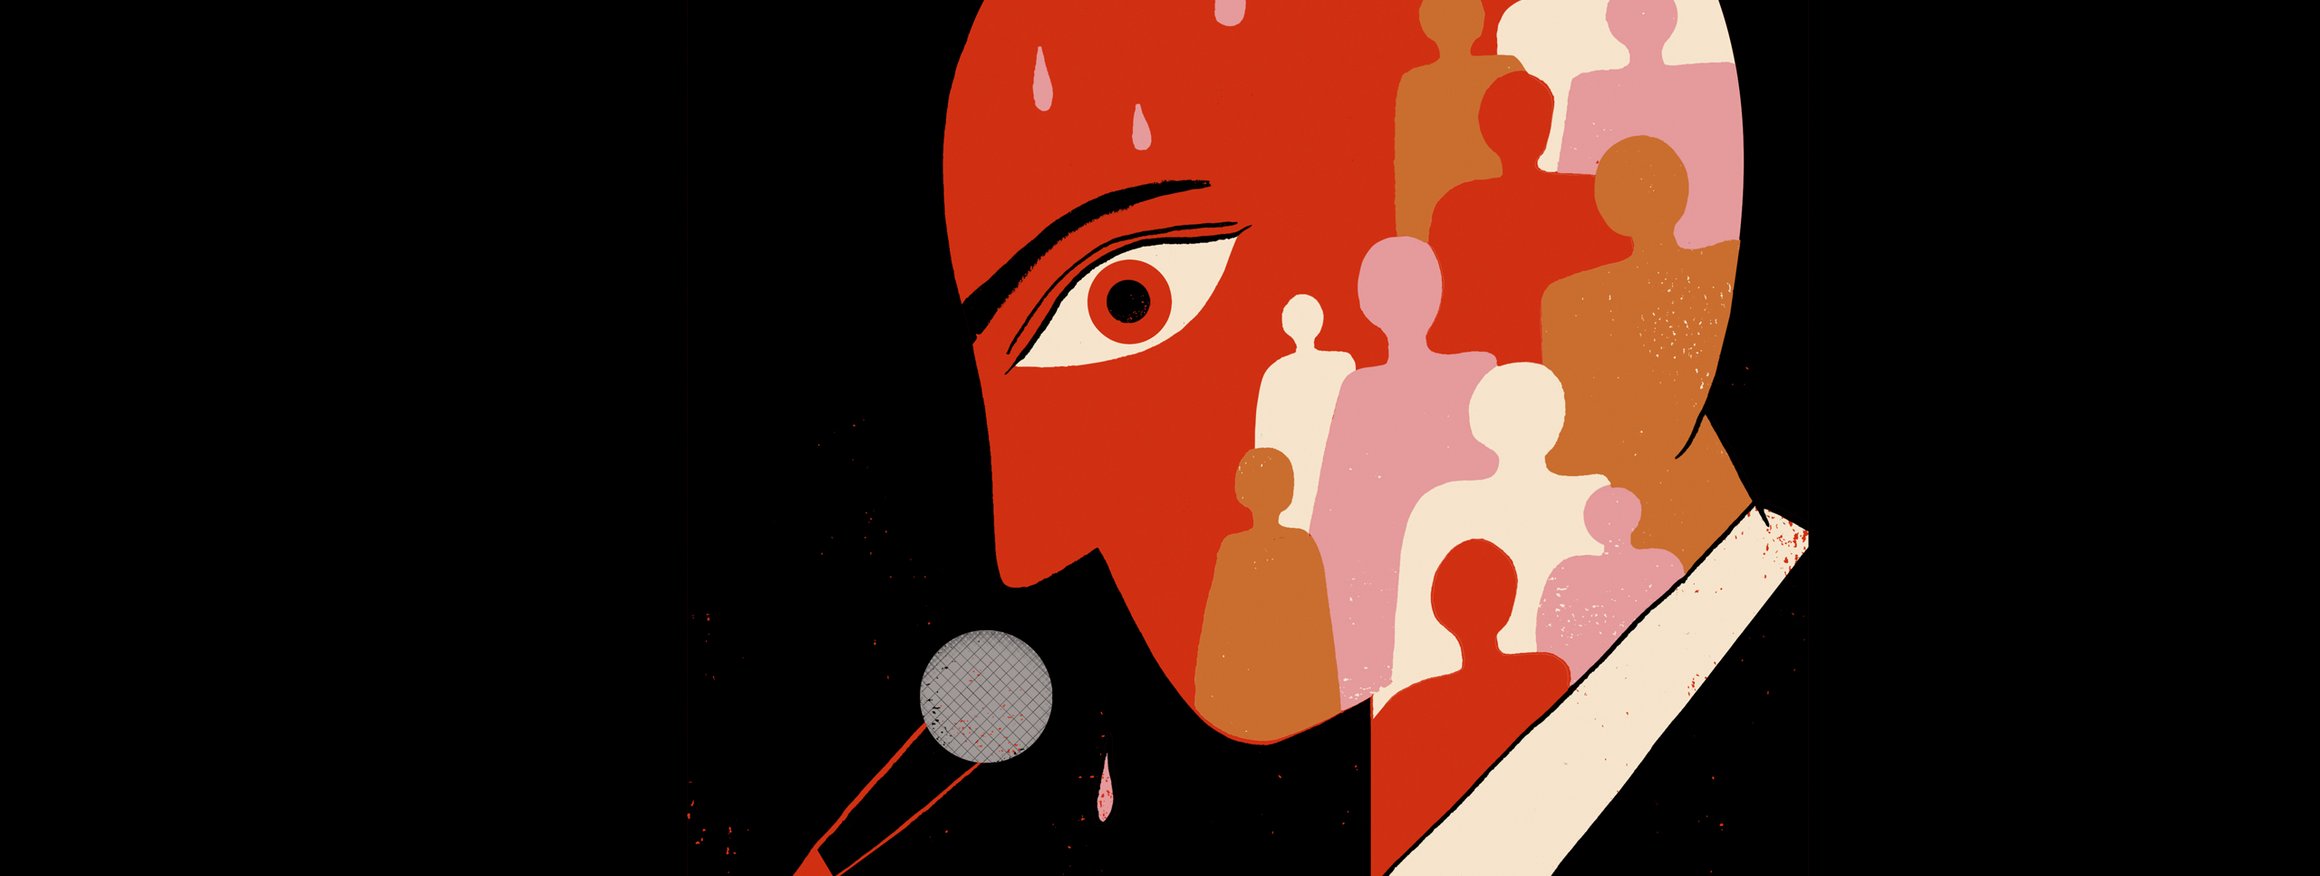 Die Illustration zeigt einen Mann mit rotem Kopf vor einem Mikrofon, während im Kopf viele Menschen sind